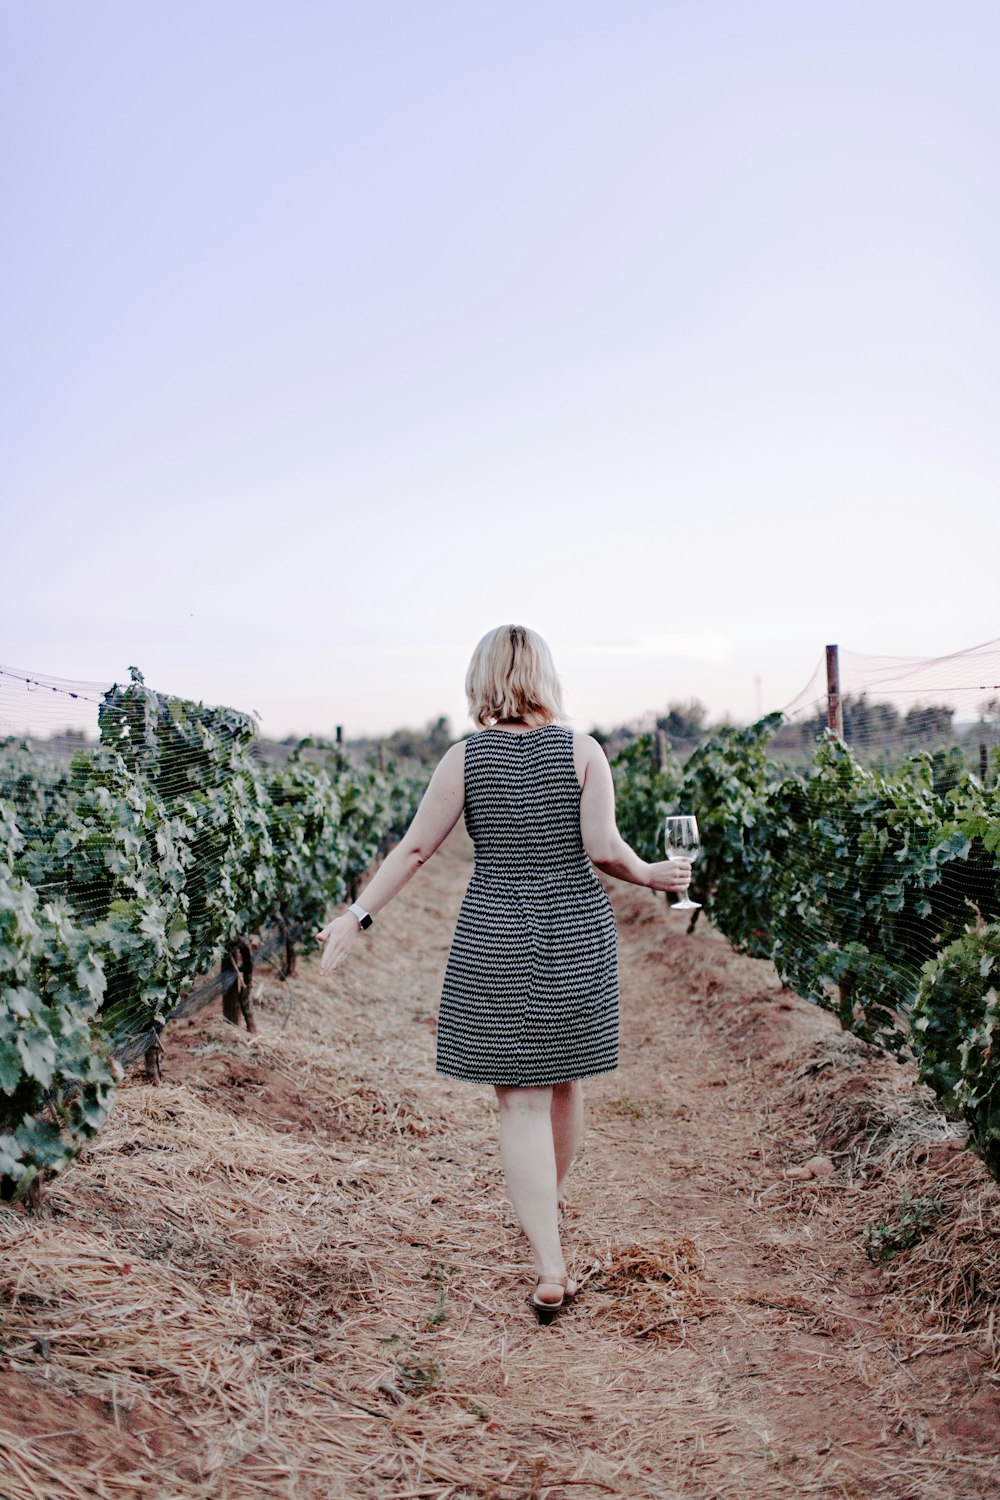 femme marchant sur le vignoble tenant un verre de vin